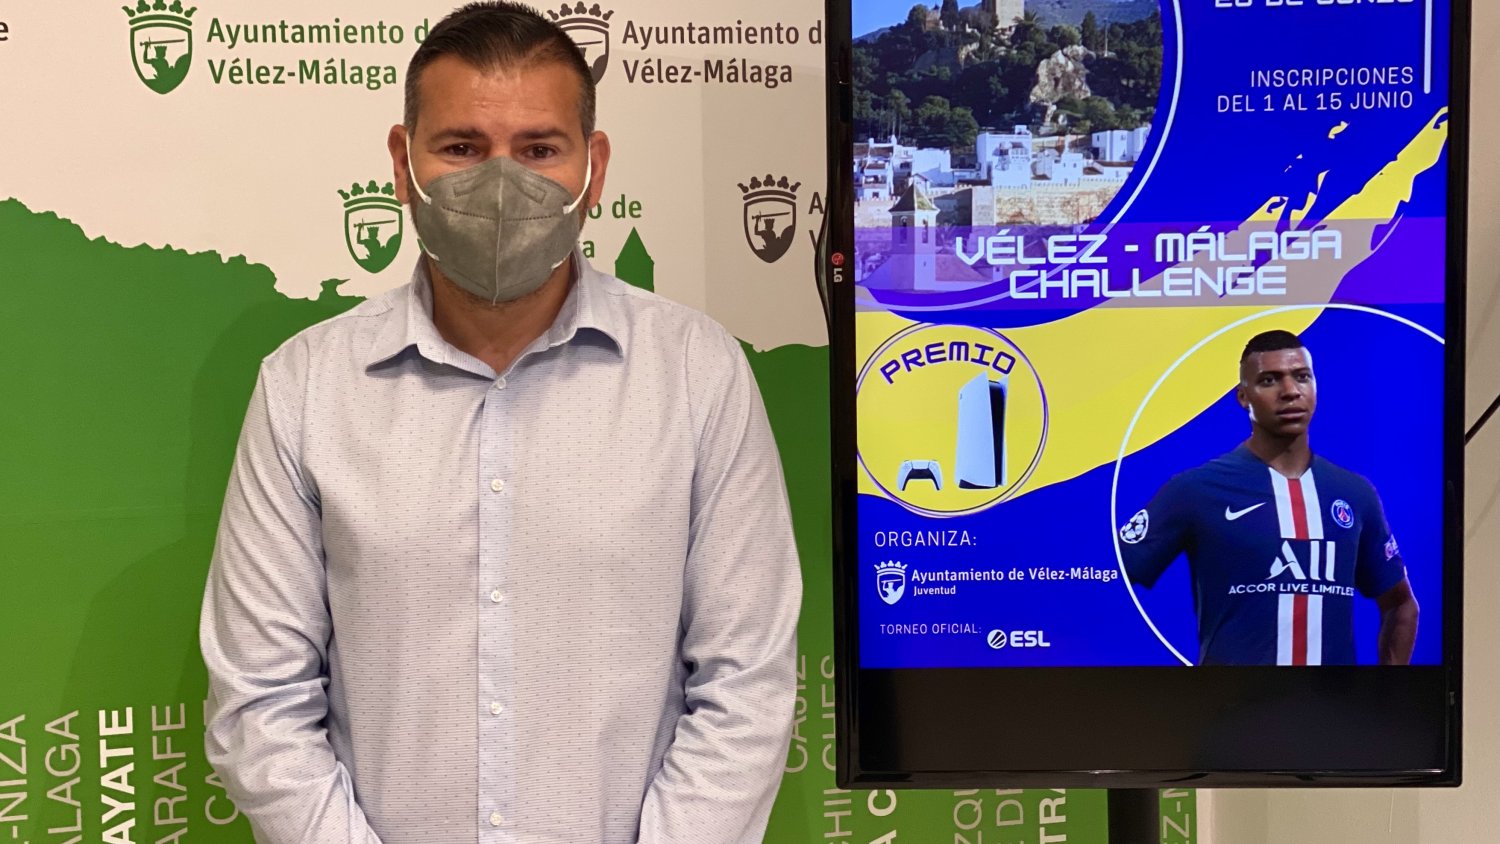 Vélez-Málaga organiza un Torneo online FIFA para PS4 con más de 250 jugadores del municipio